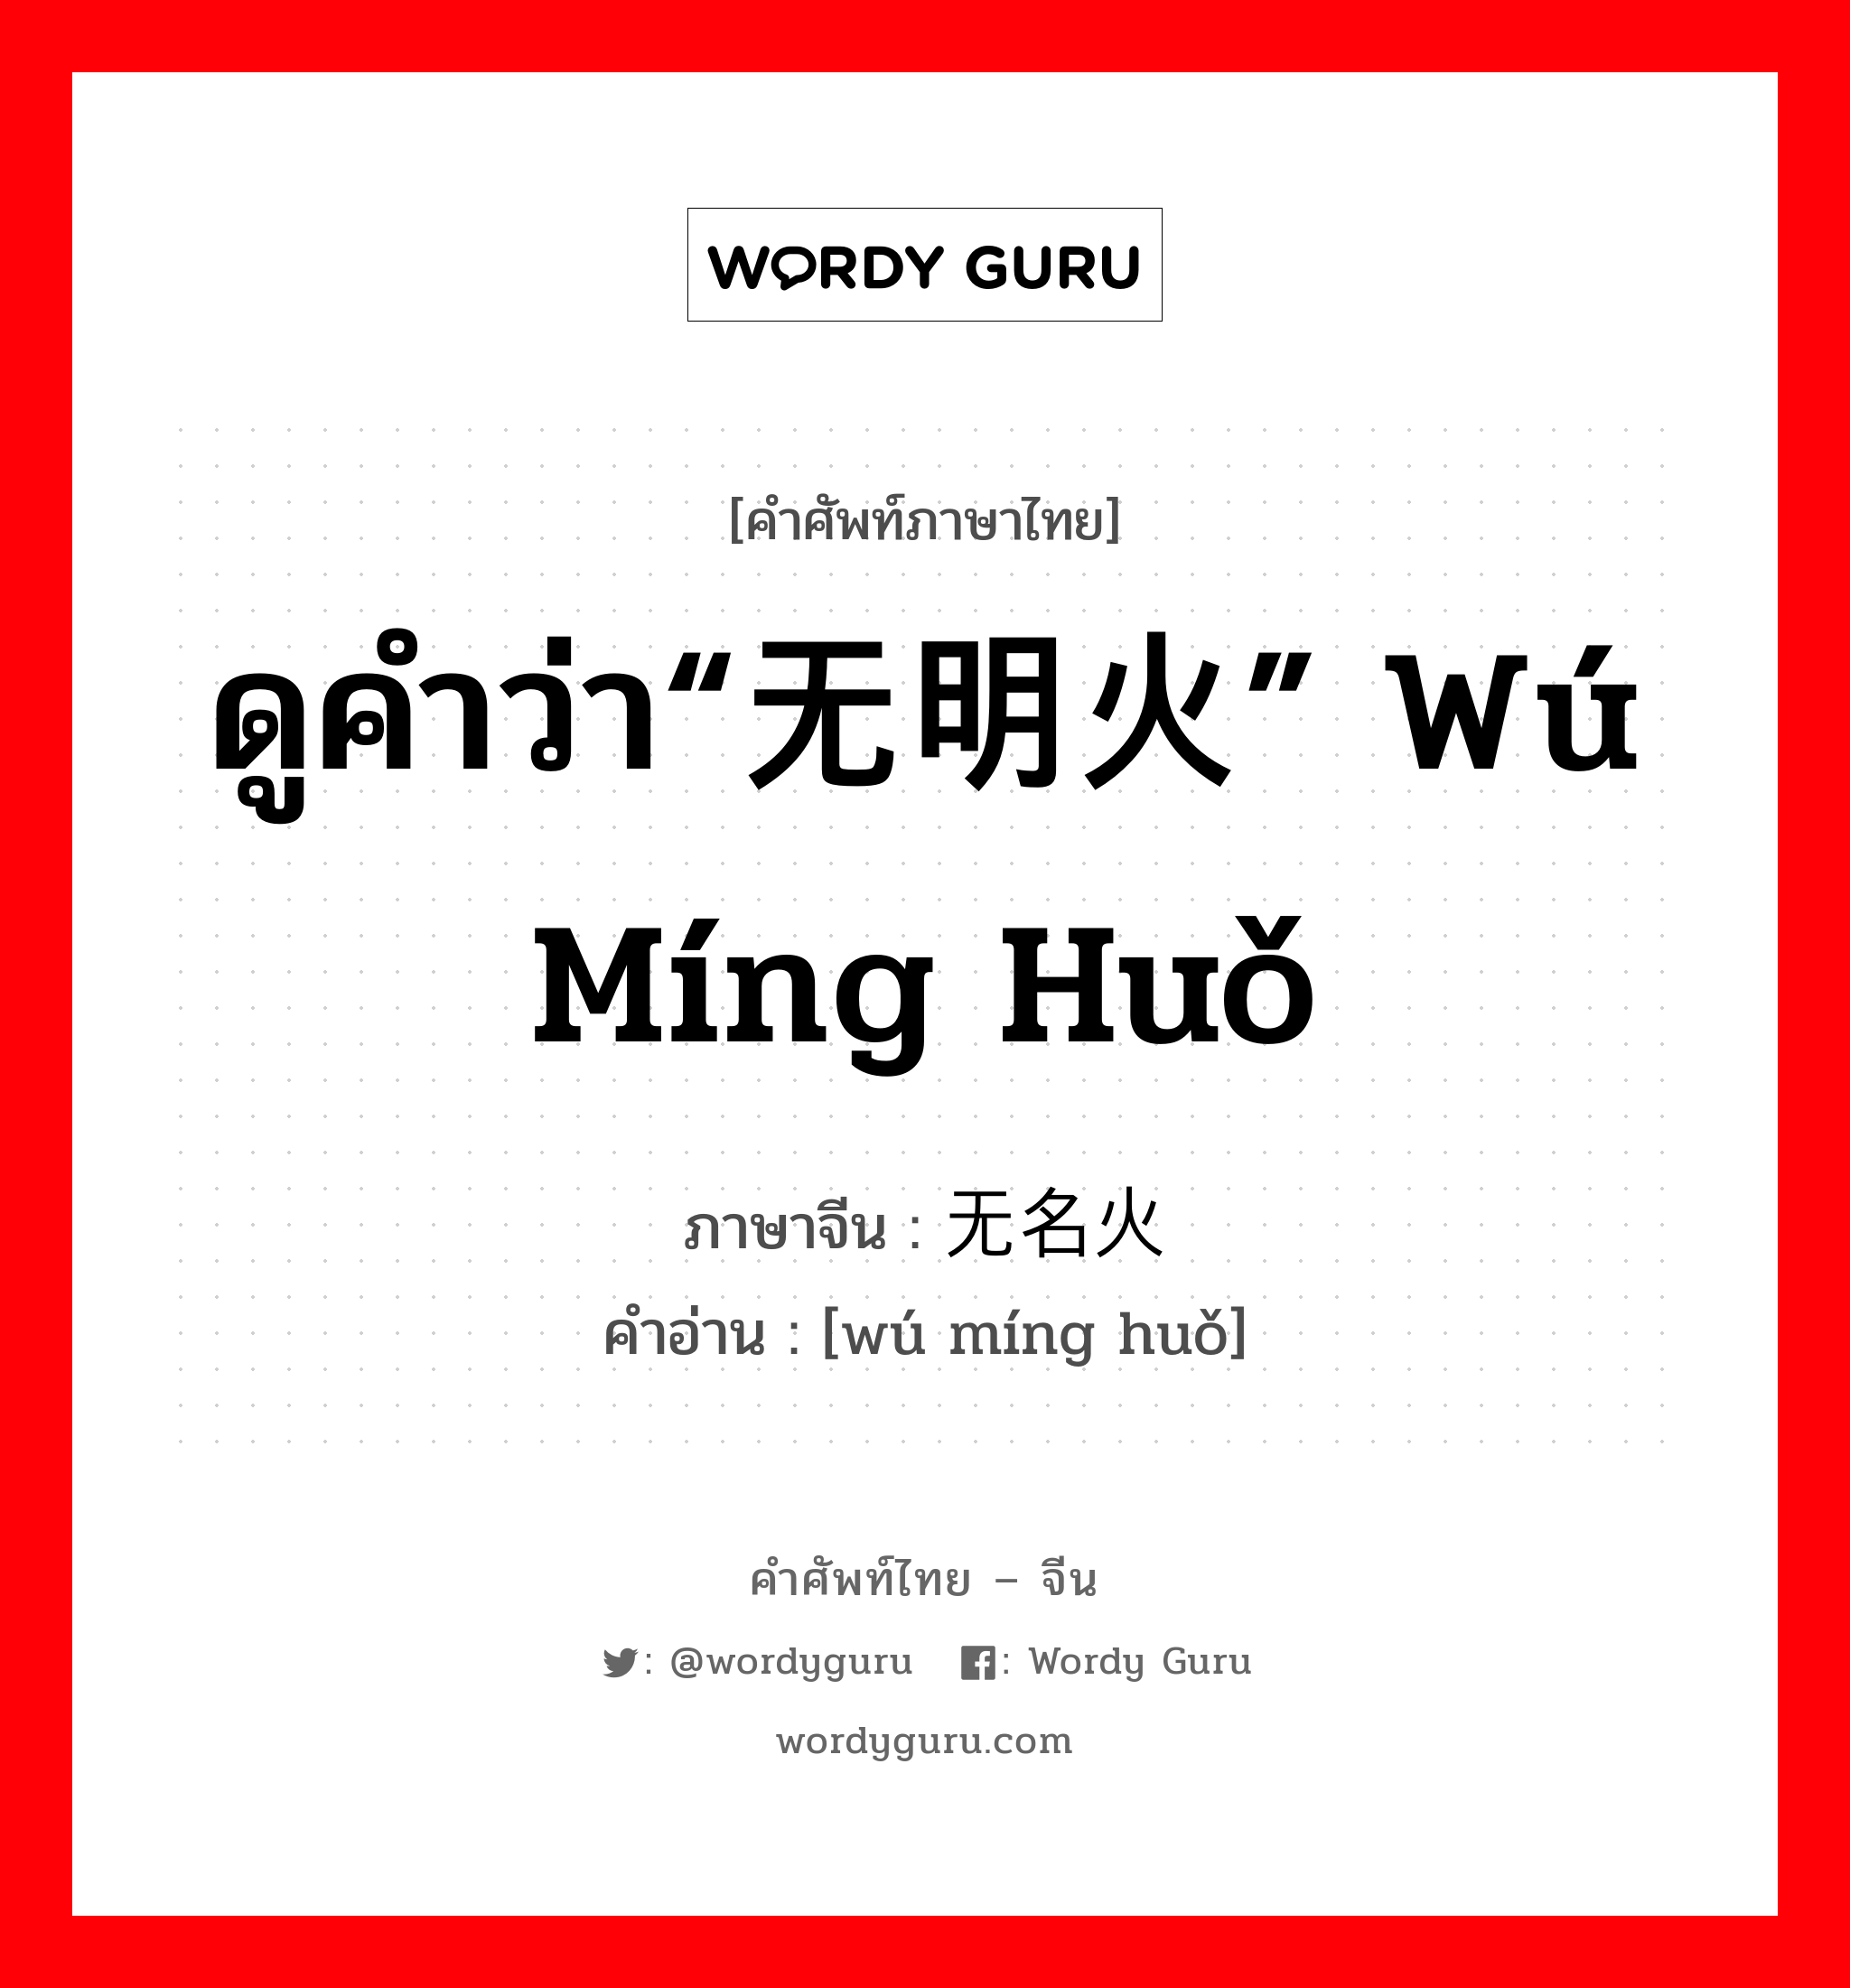 ดูคำว่า“无明火” wú míng huǒ ภาษาจีนคืออะไร, คำศัพท์ภาษาไทย - จีน ดูคำว่า“无明火” wú míng huǒ ภาษาจีน 无名火 คำอ่าน [wú míng huǒ]